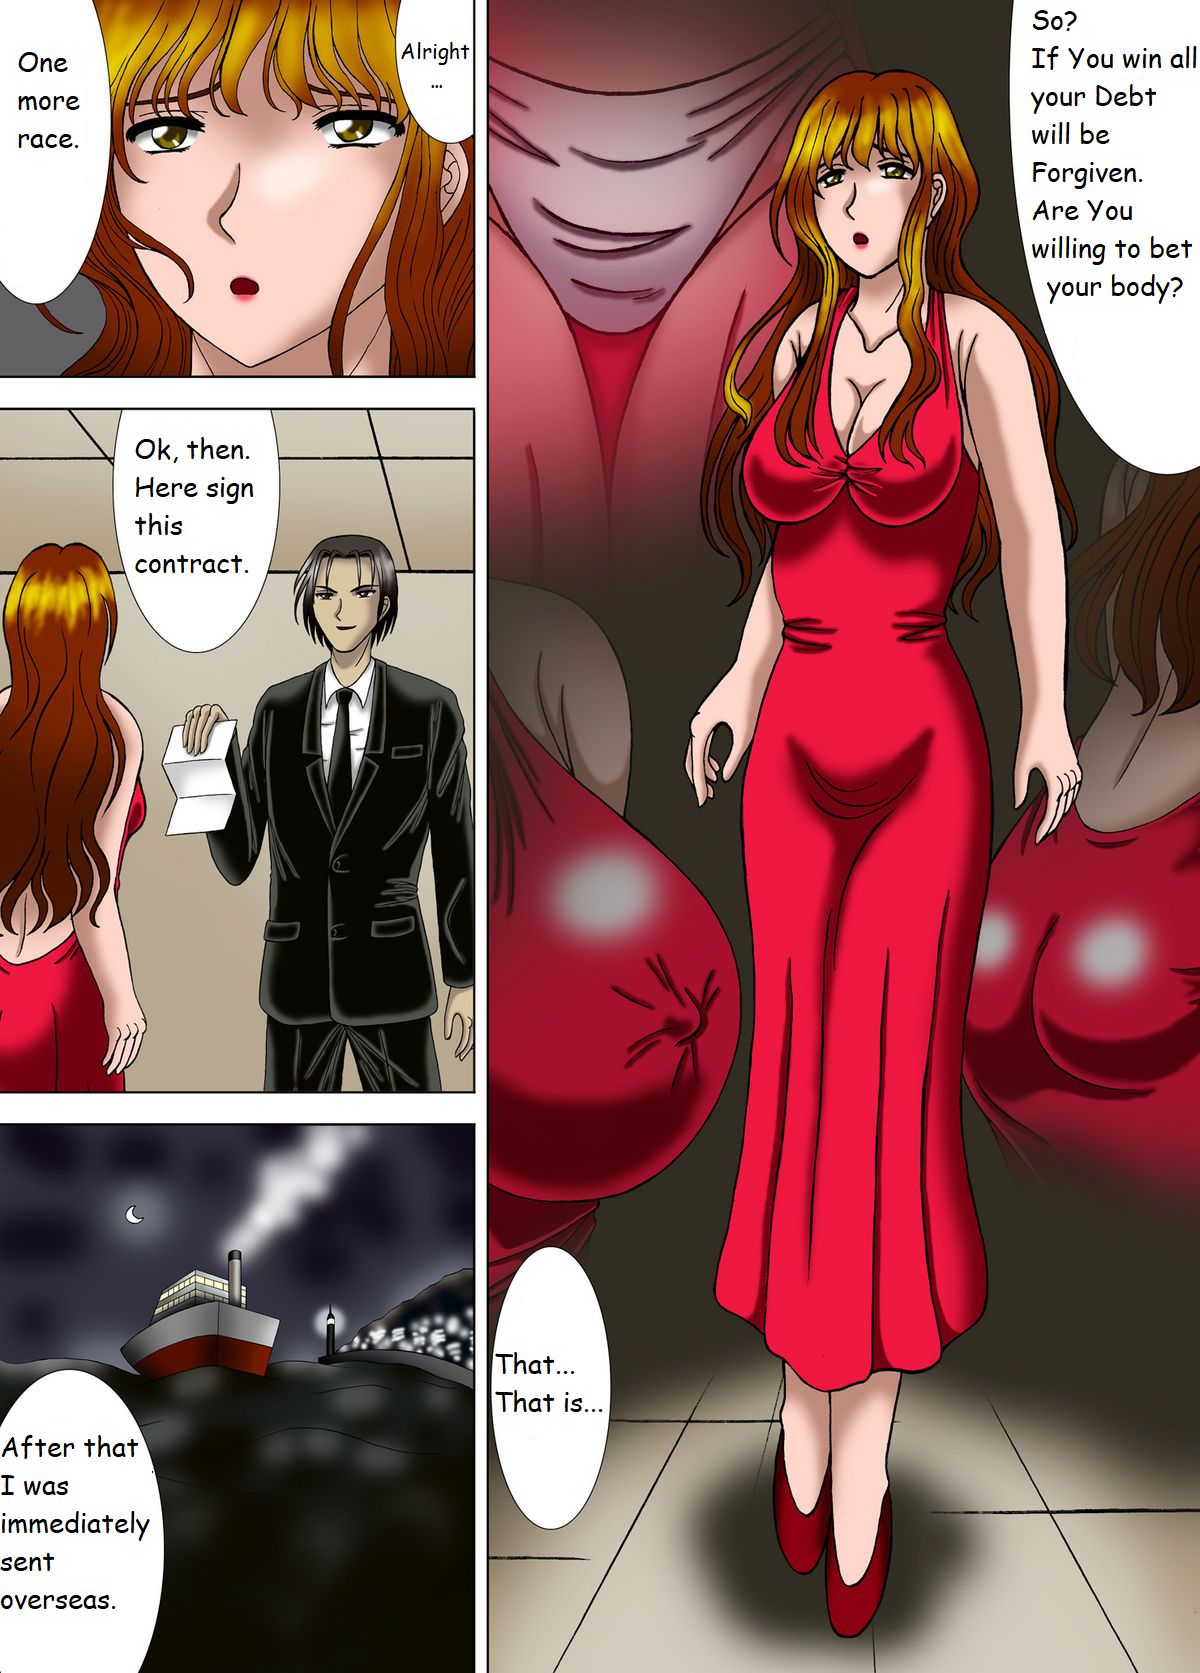 Anime Sex Slave Page 5 | BDSM Fetish